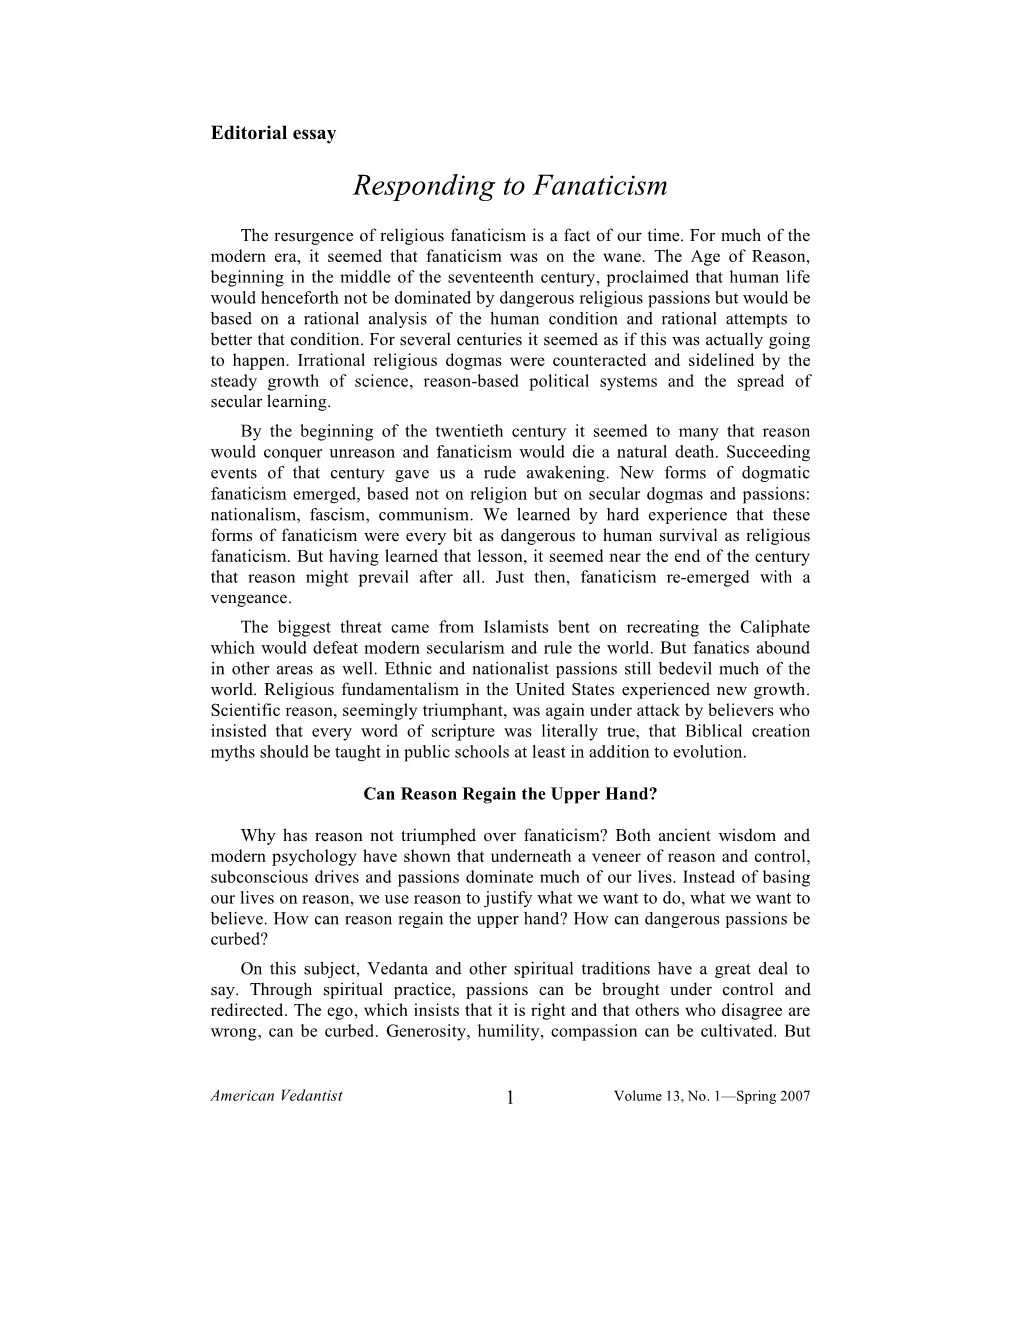 Volume 13, No. 1 – Spring 2007 – Focus: Responding to Fanaticism